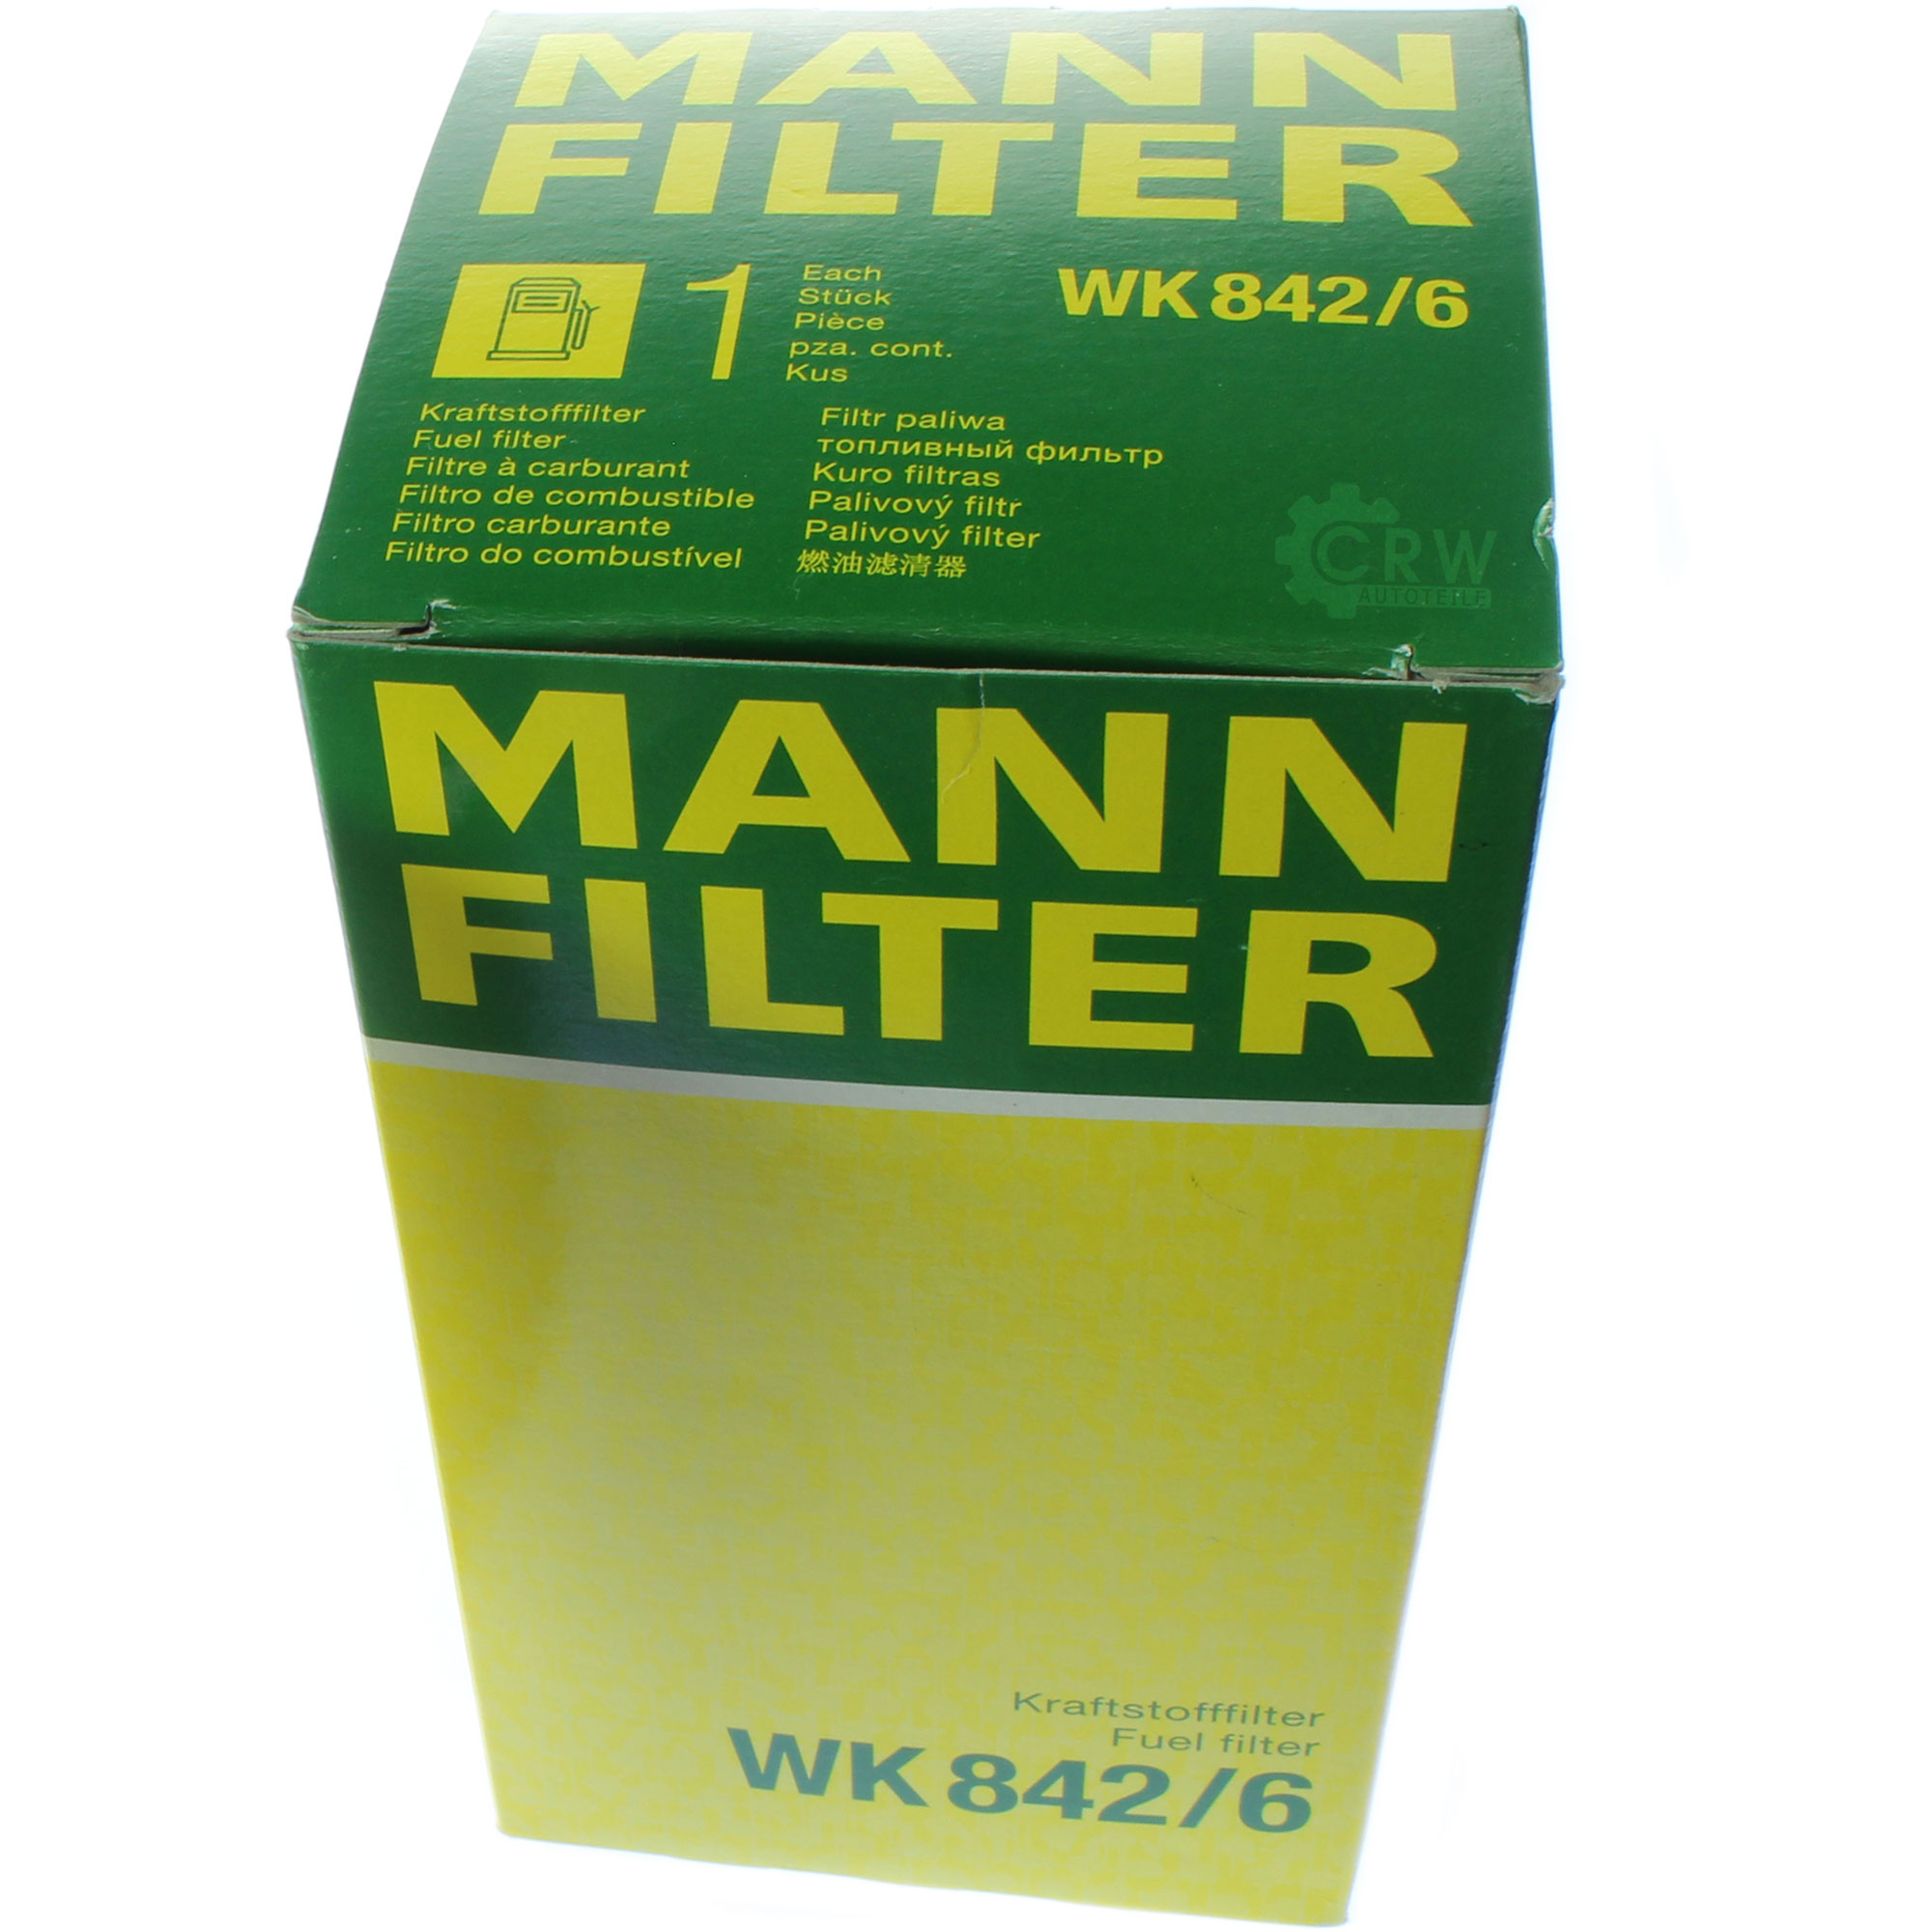 MANN-FILTER Kraftstofffilter WK 842/6 Fuel Filter